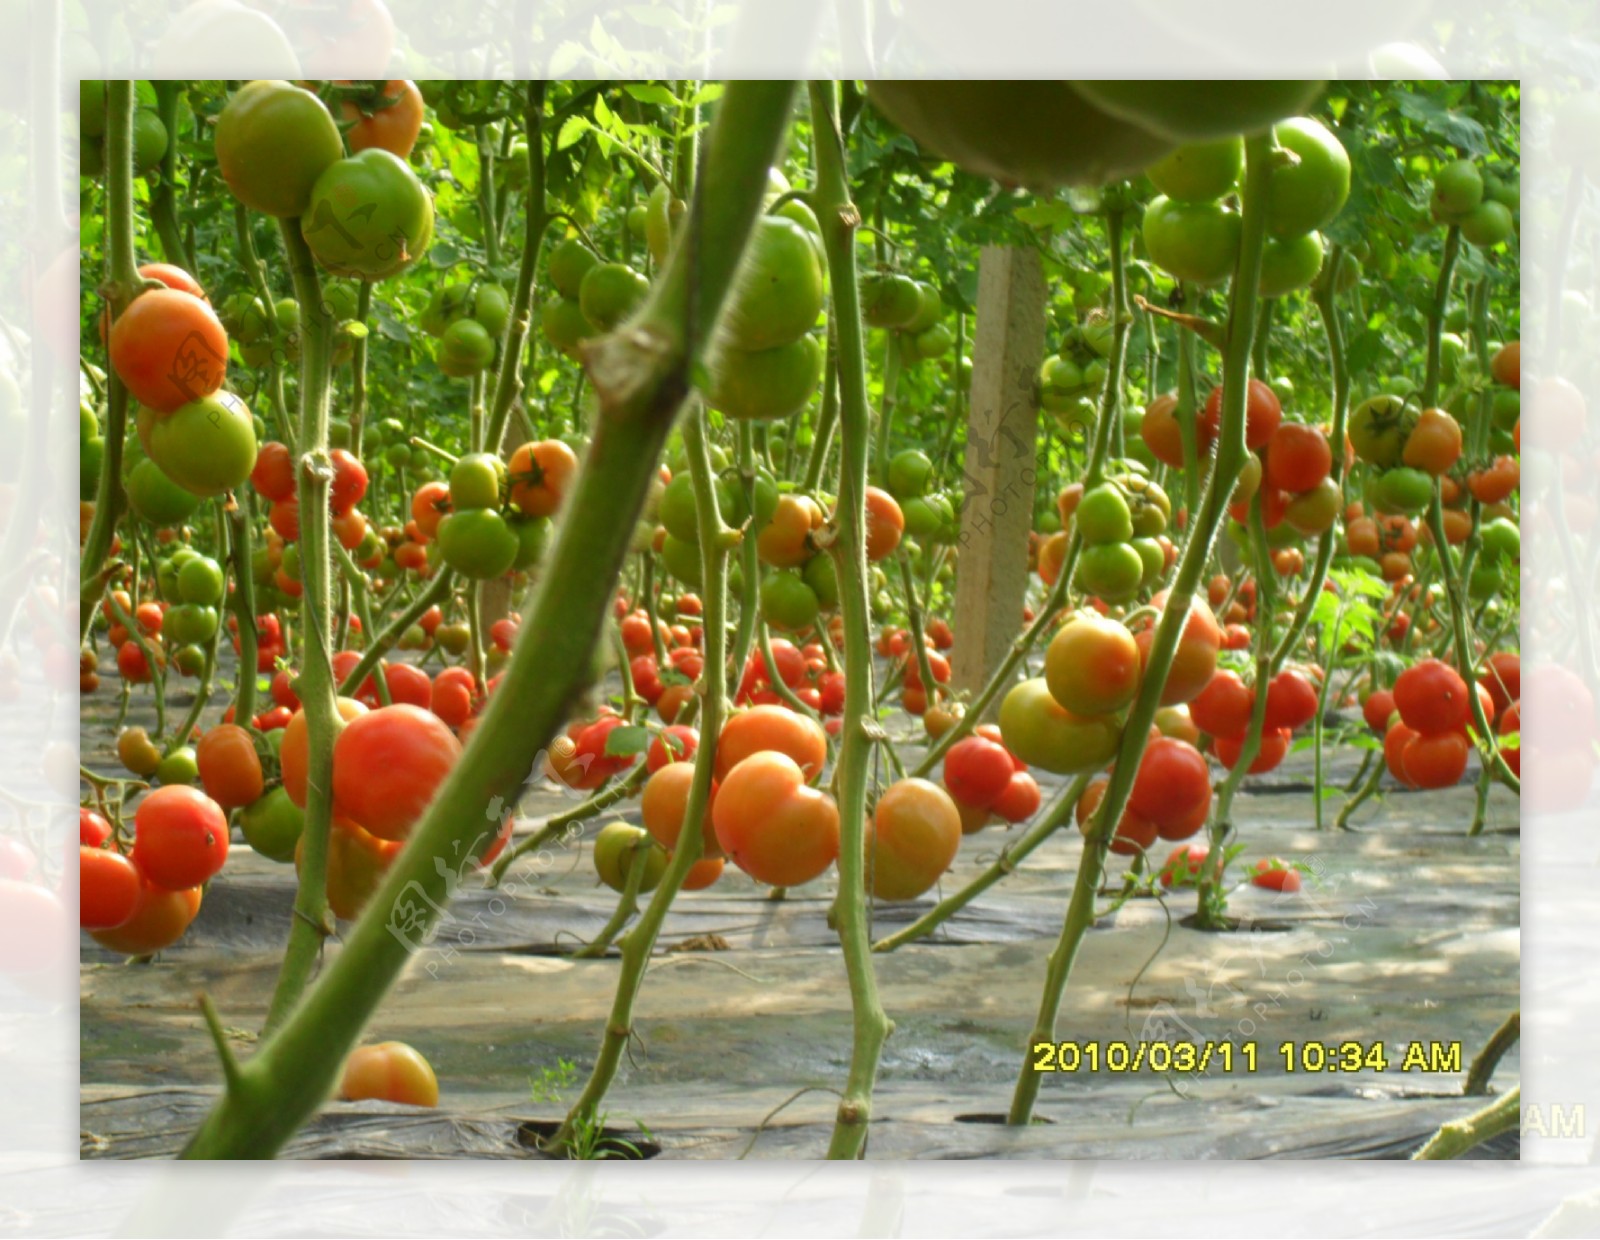 大棚番茄图片